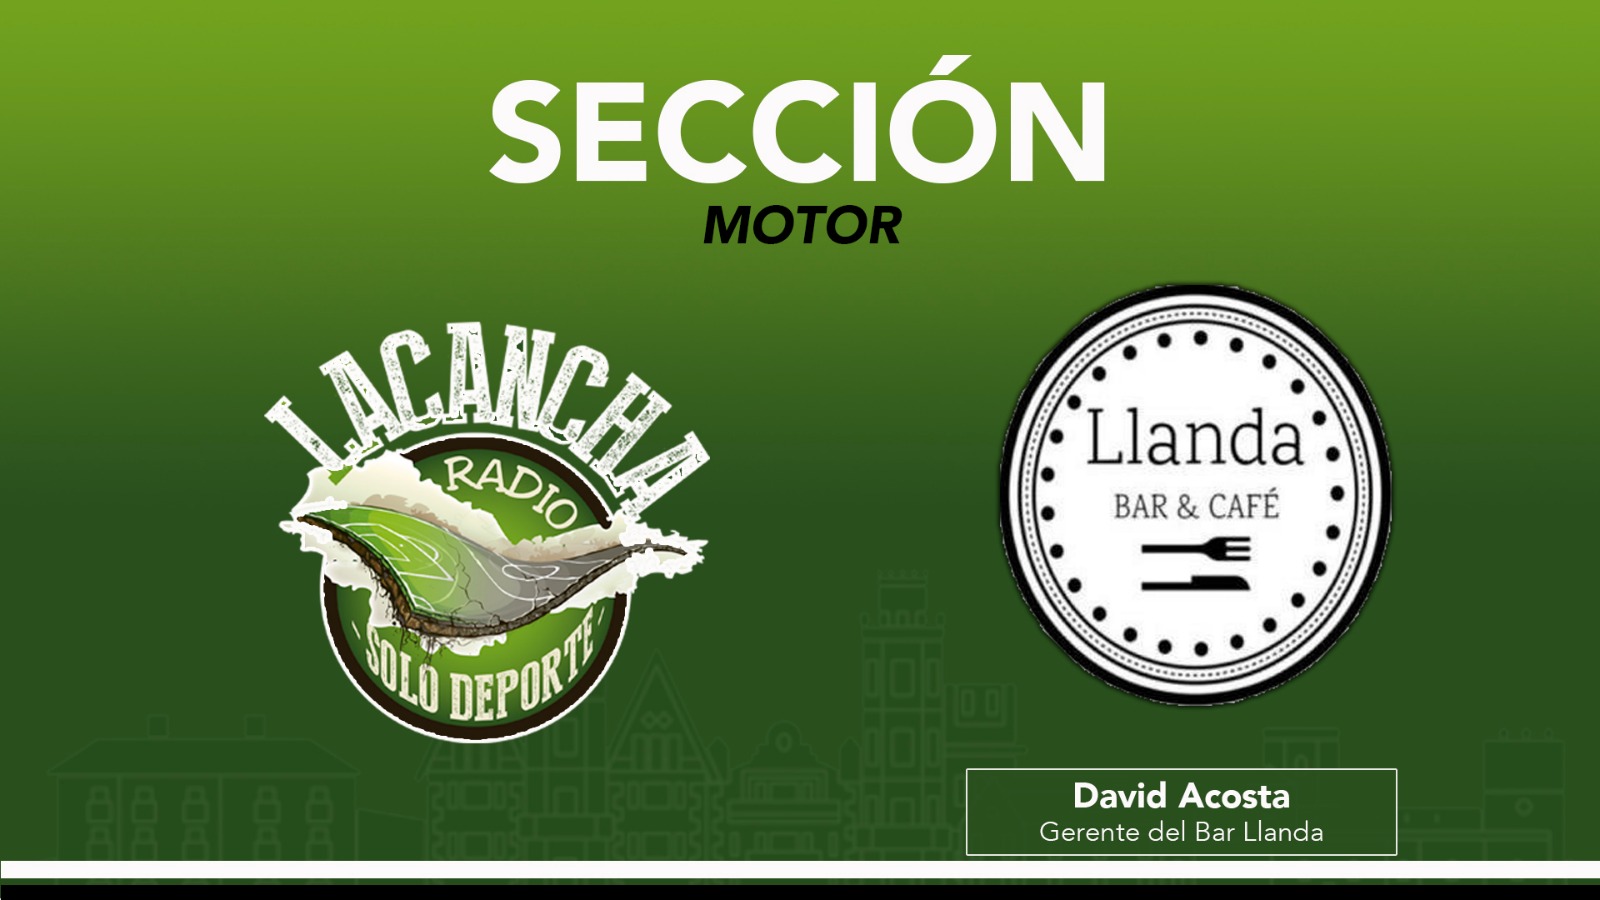 Sección ‘Motor’ con David Acosta – La Cancha